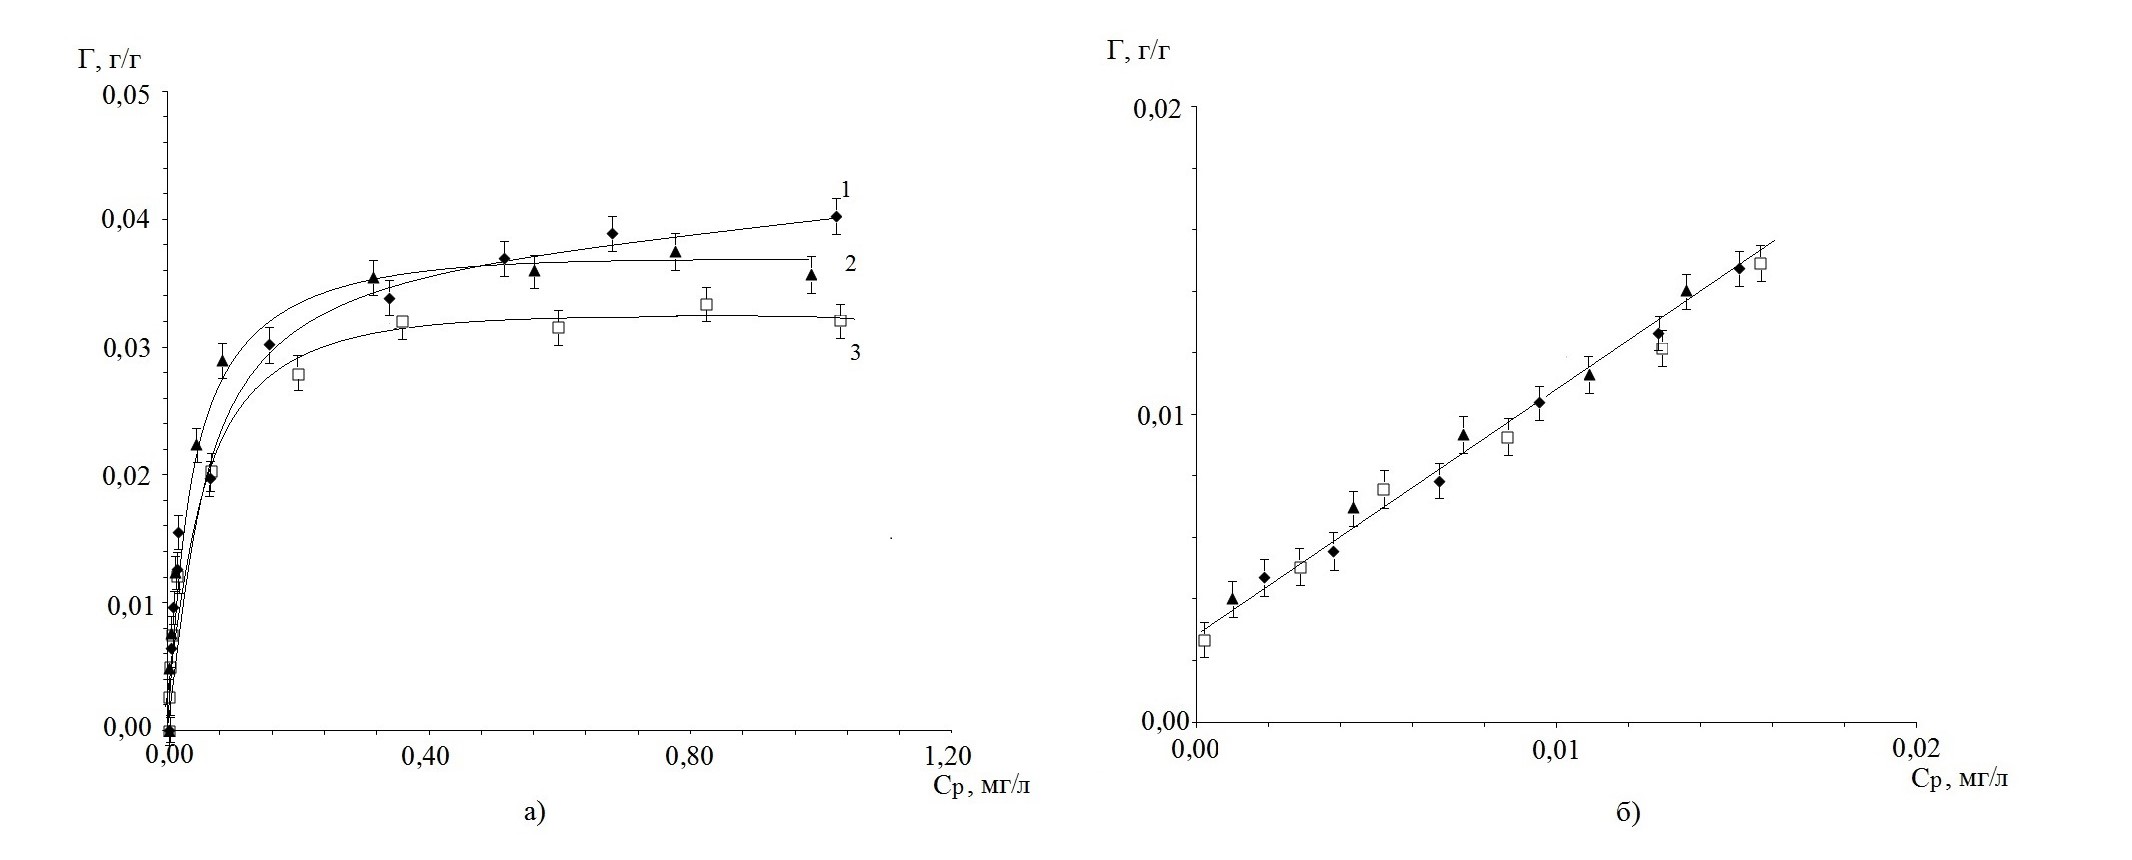 Изотермы избыточной адсорбции пиридина из водного раствора гранулированными активными углями марок АГ-ОВ-1 (1), АГ-5 (2) и СКД-515 (3):а - в исследуемом диапазоне равновесных концентраций; б - в области низких равновесных концентраций